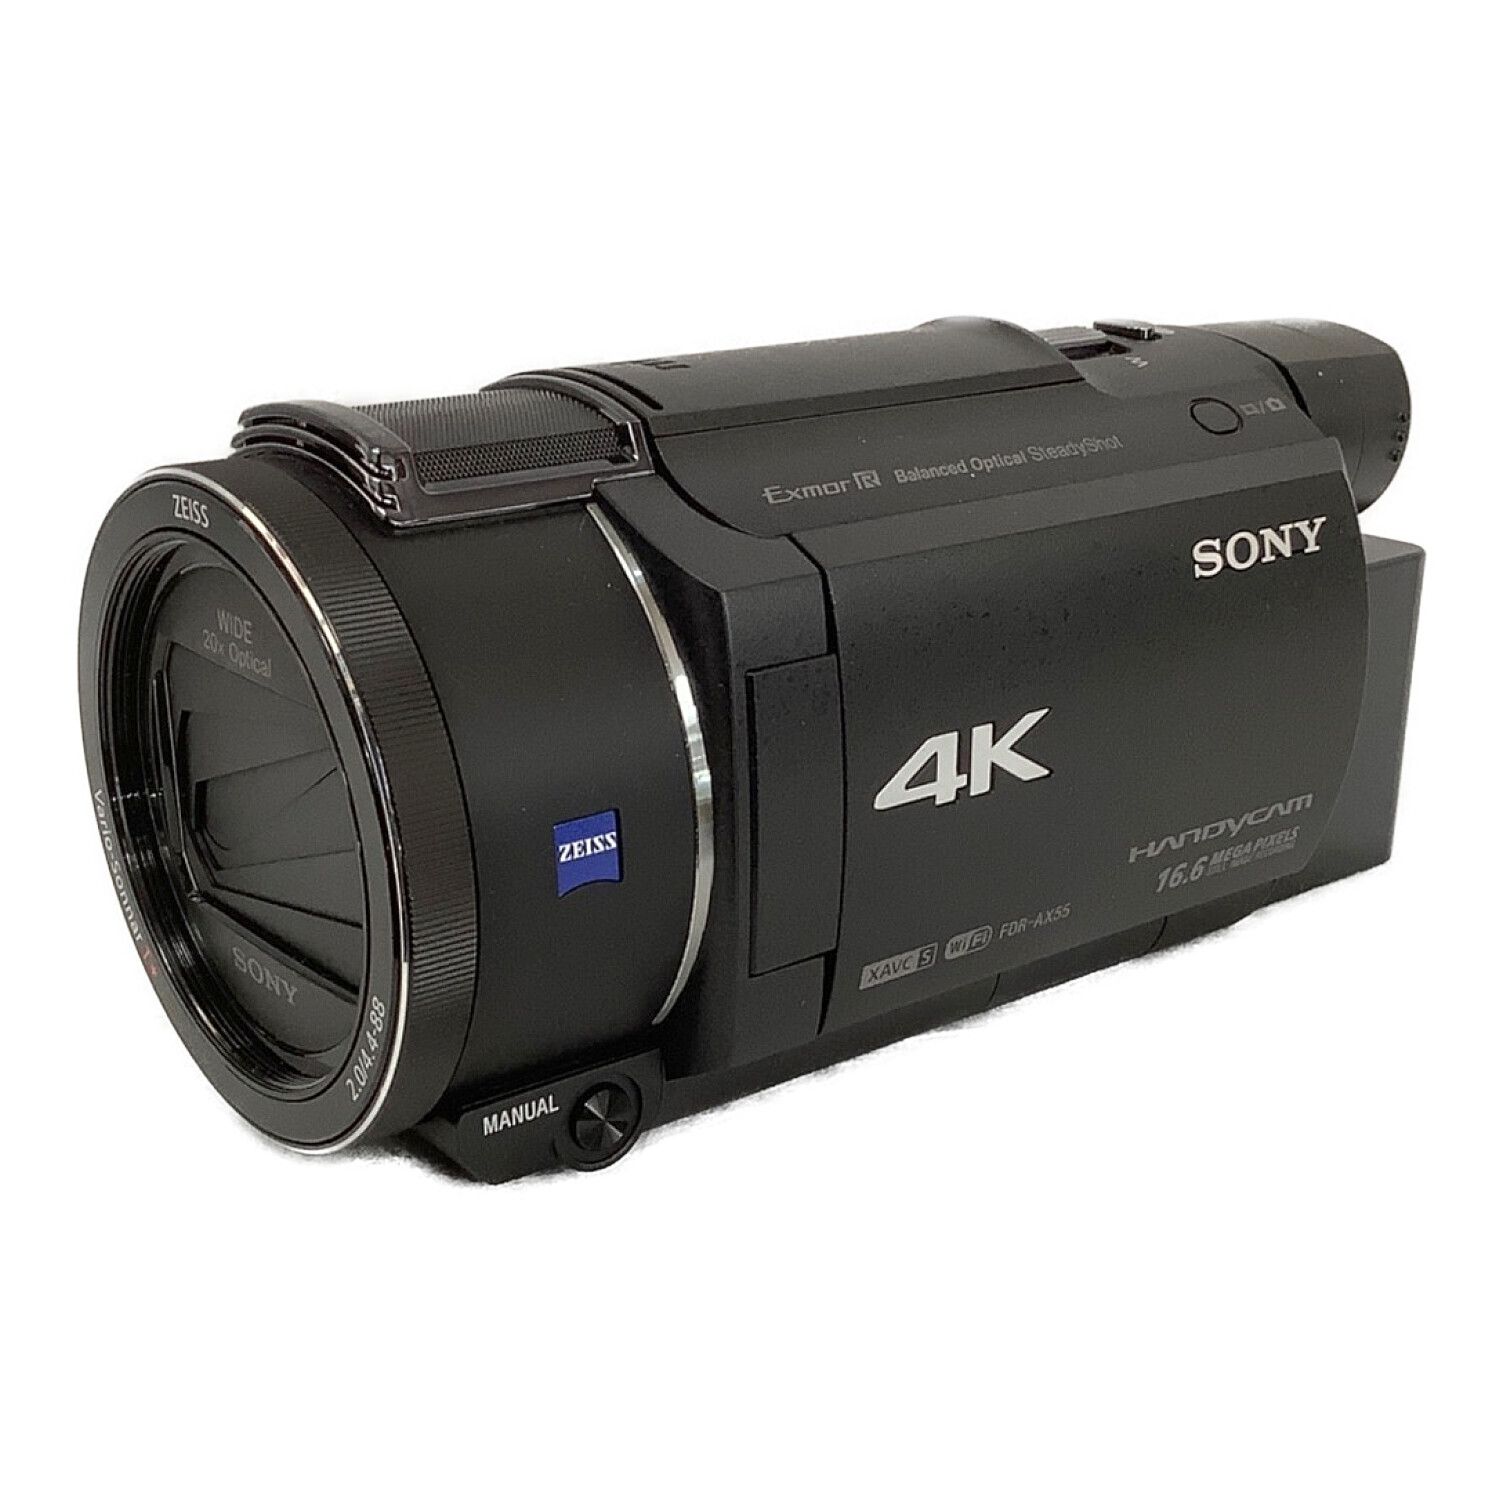 SONY (ソニー) デジタル4Kビデオカメラ 撮影時間150 分 829万画素 SD